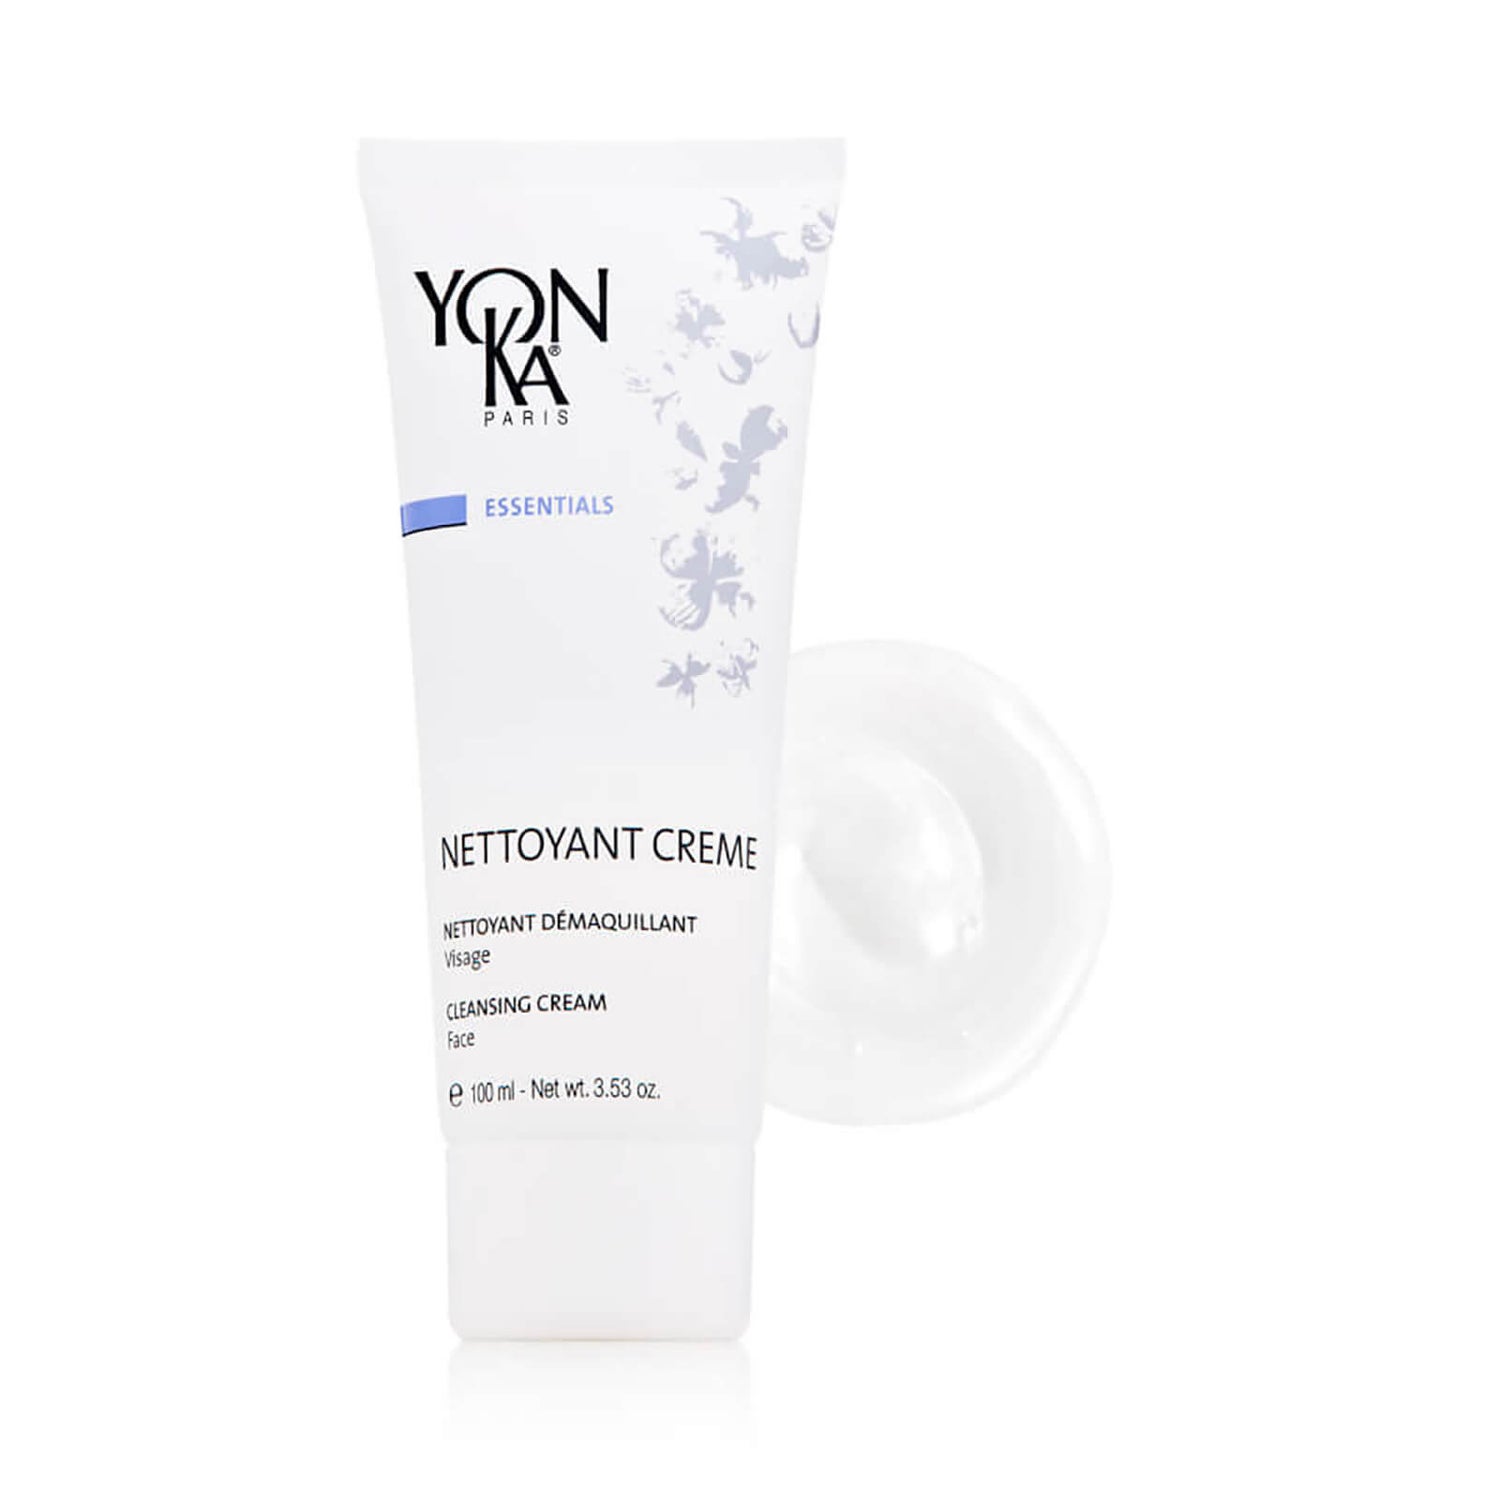 Yon-Ka Paris Skincare Nettoyant Creme Cleanser (3.53 oz.)